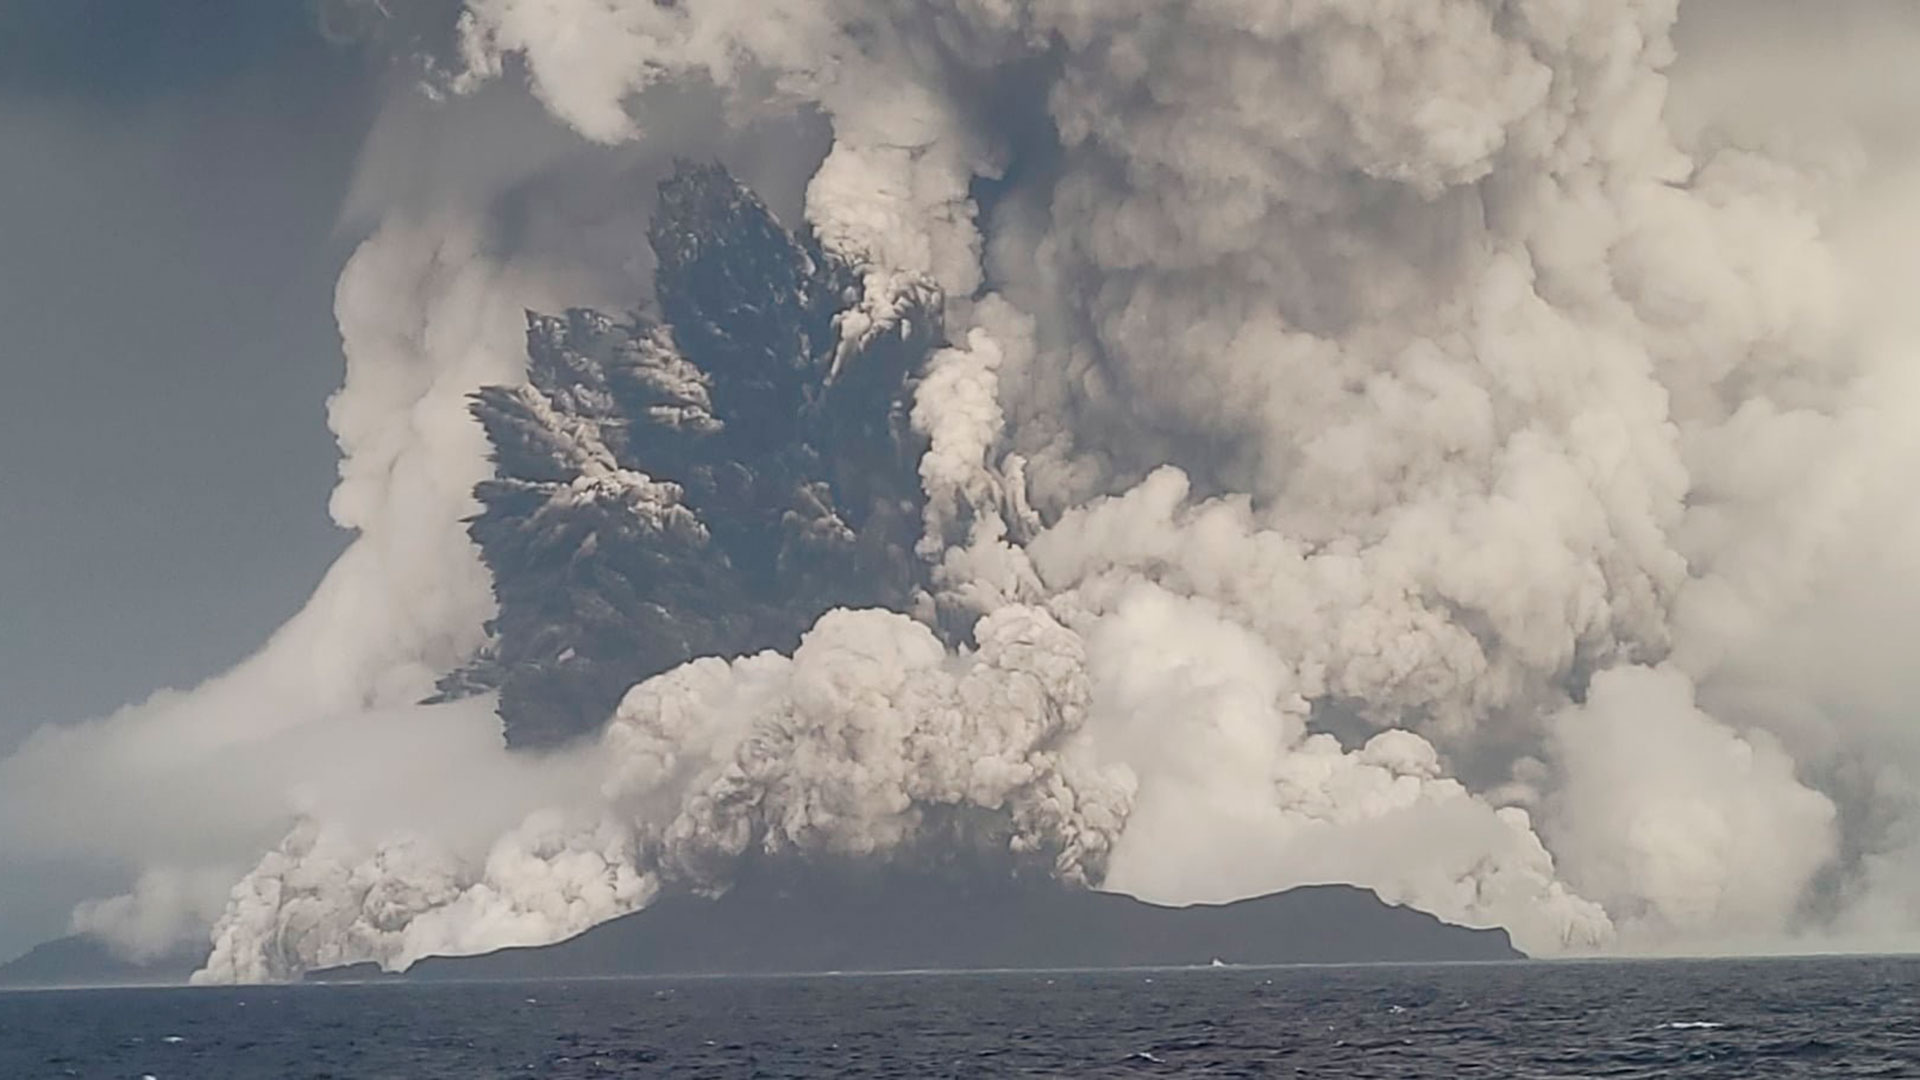 La erupción del volcán provocó alertas de tsunami en varios países con costa en el Pacífico (Crédito: Servicio Geológico de Tonga)